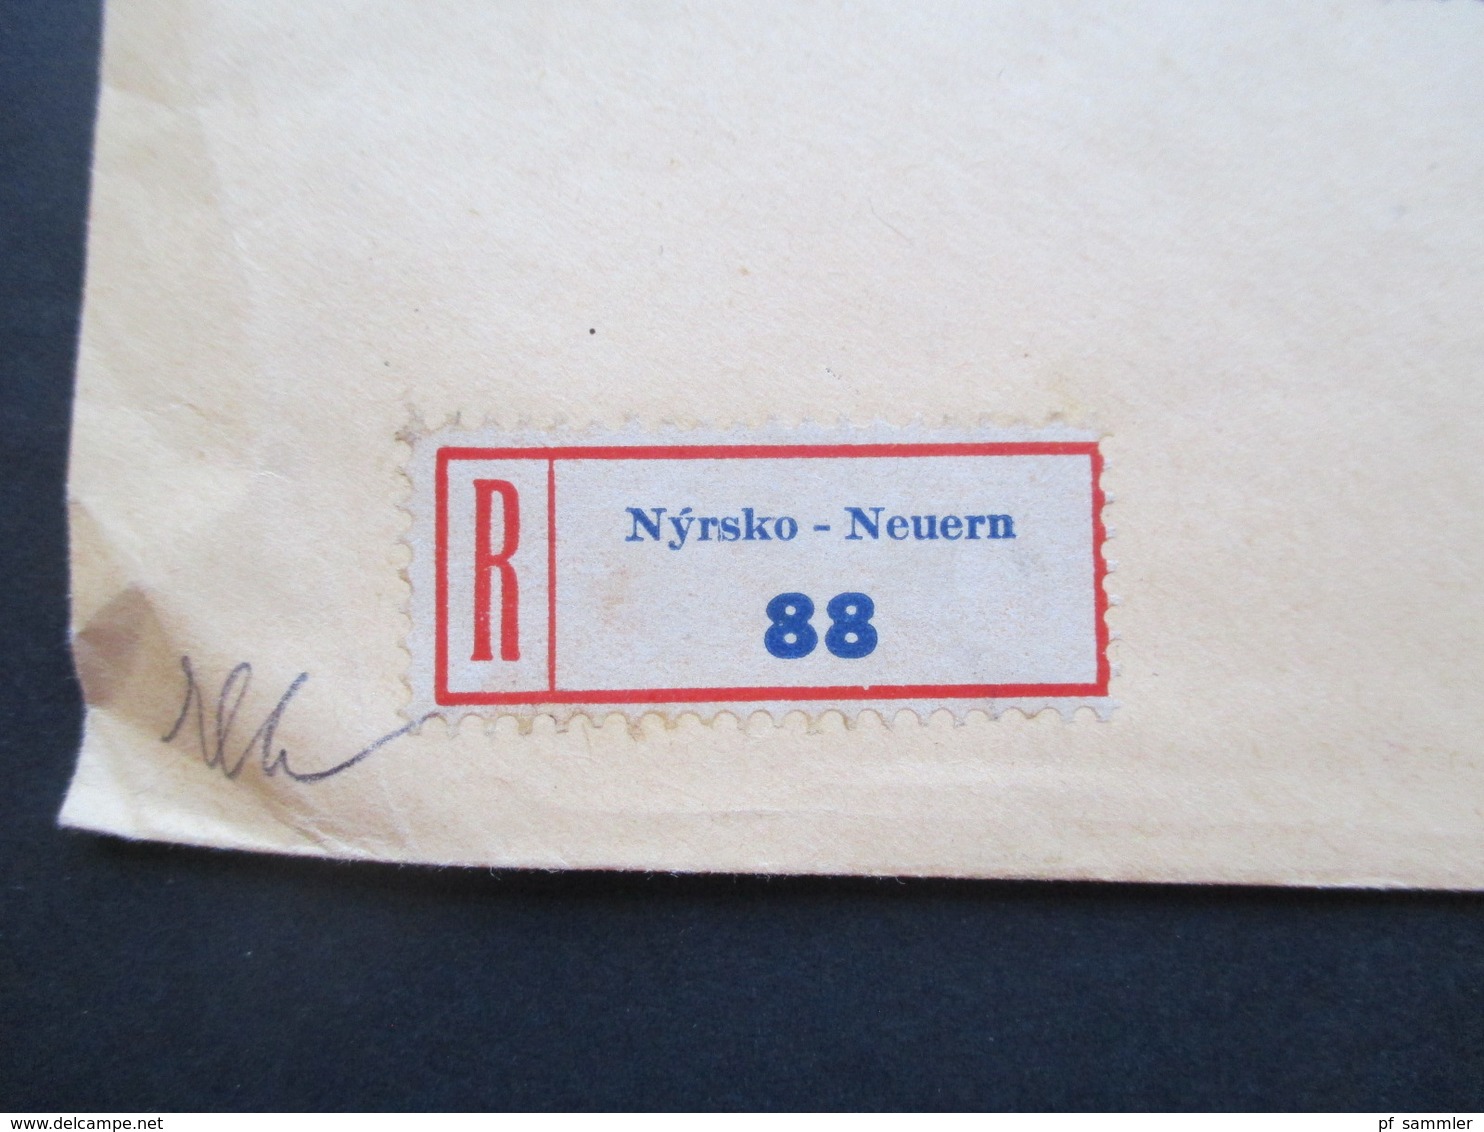 CSSR / Sudetenland 1934 Beleg Advokat Leopold Goldbach Neuern Zweisprachiger Stempel Nyrsko / Neuern Einschreiben!! - Storia Postale